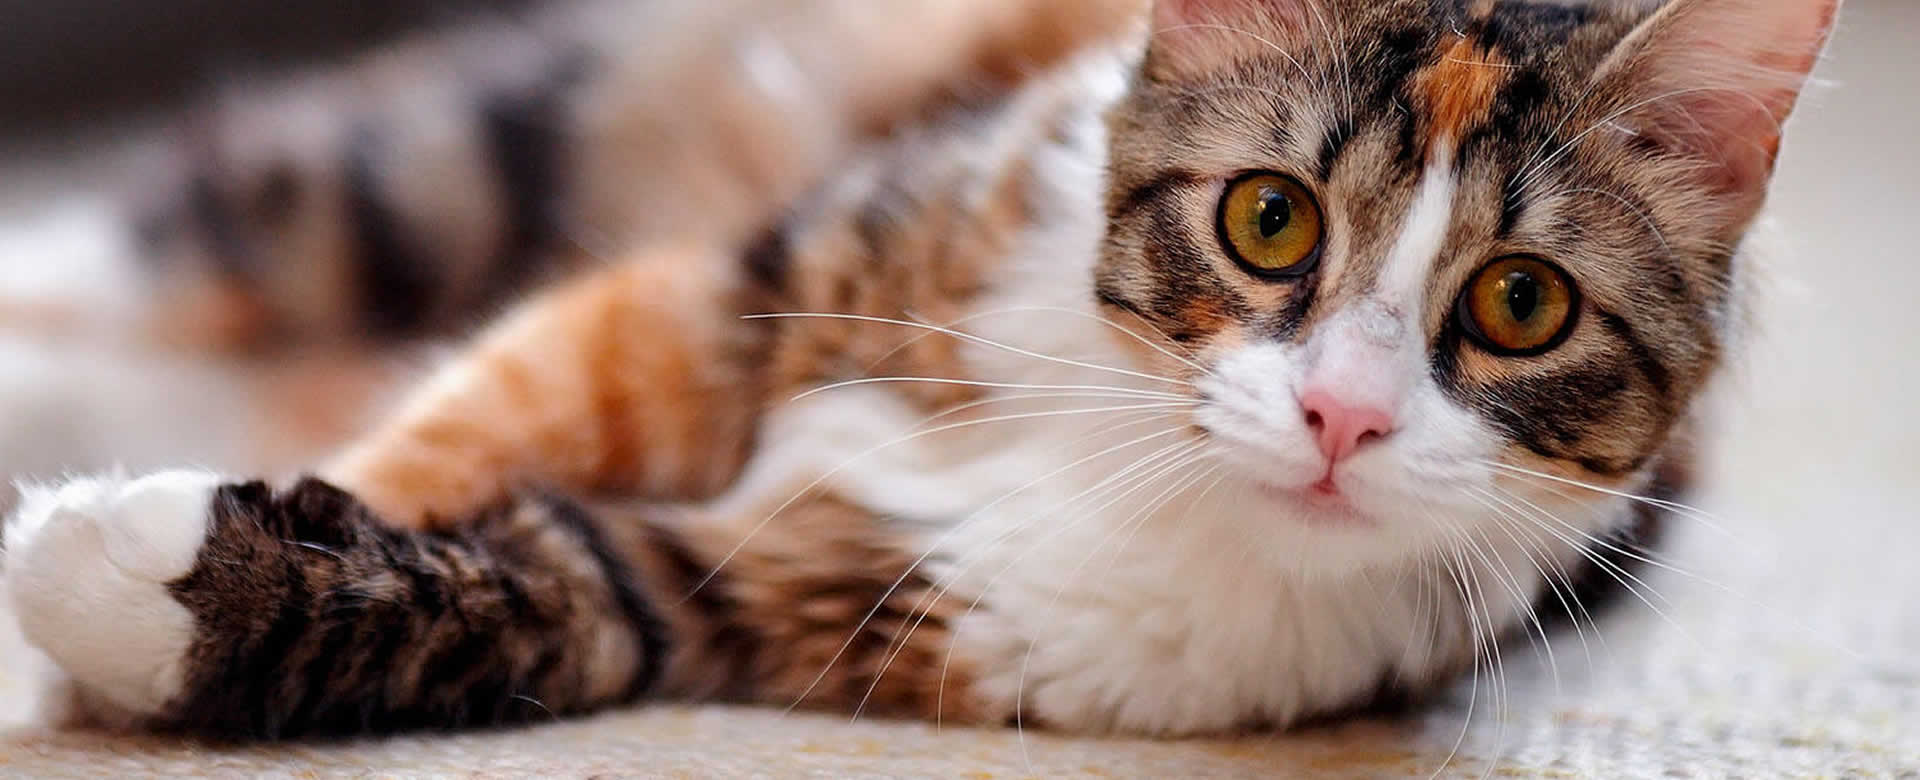 Medicamento para gatos podría combatir el COVID-19